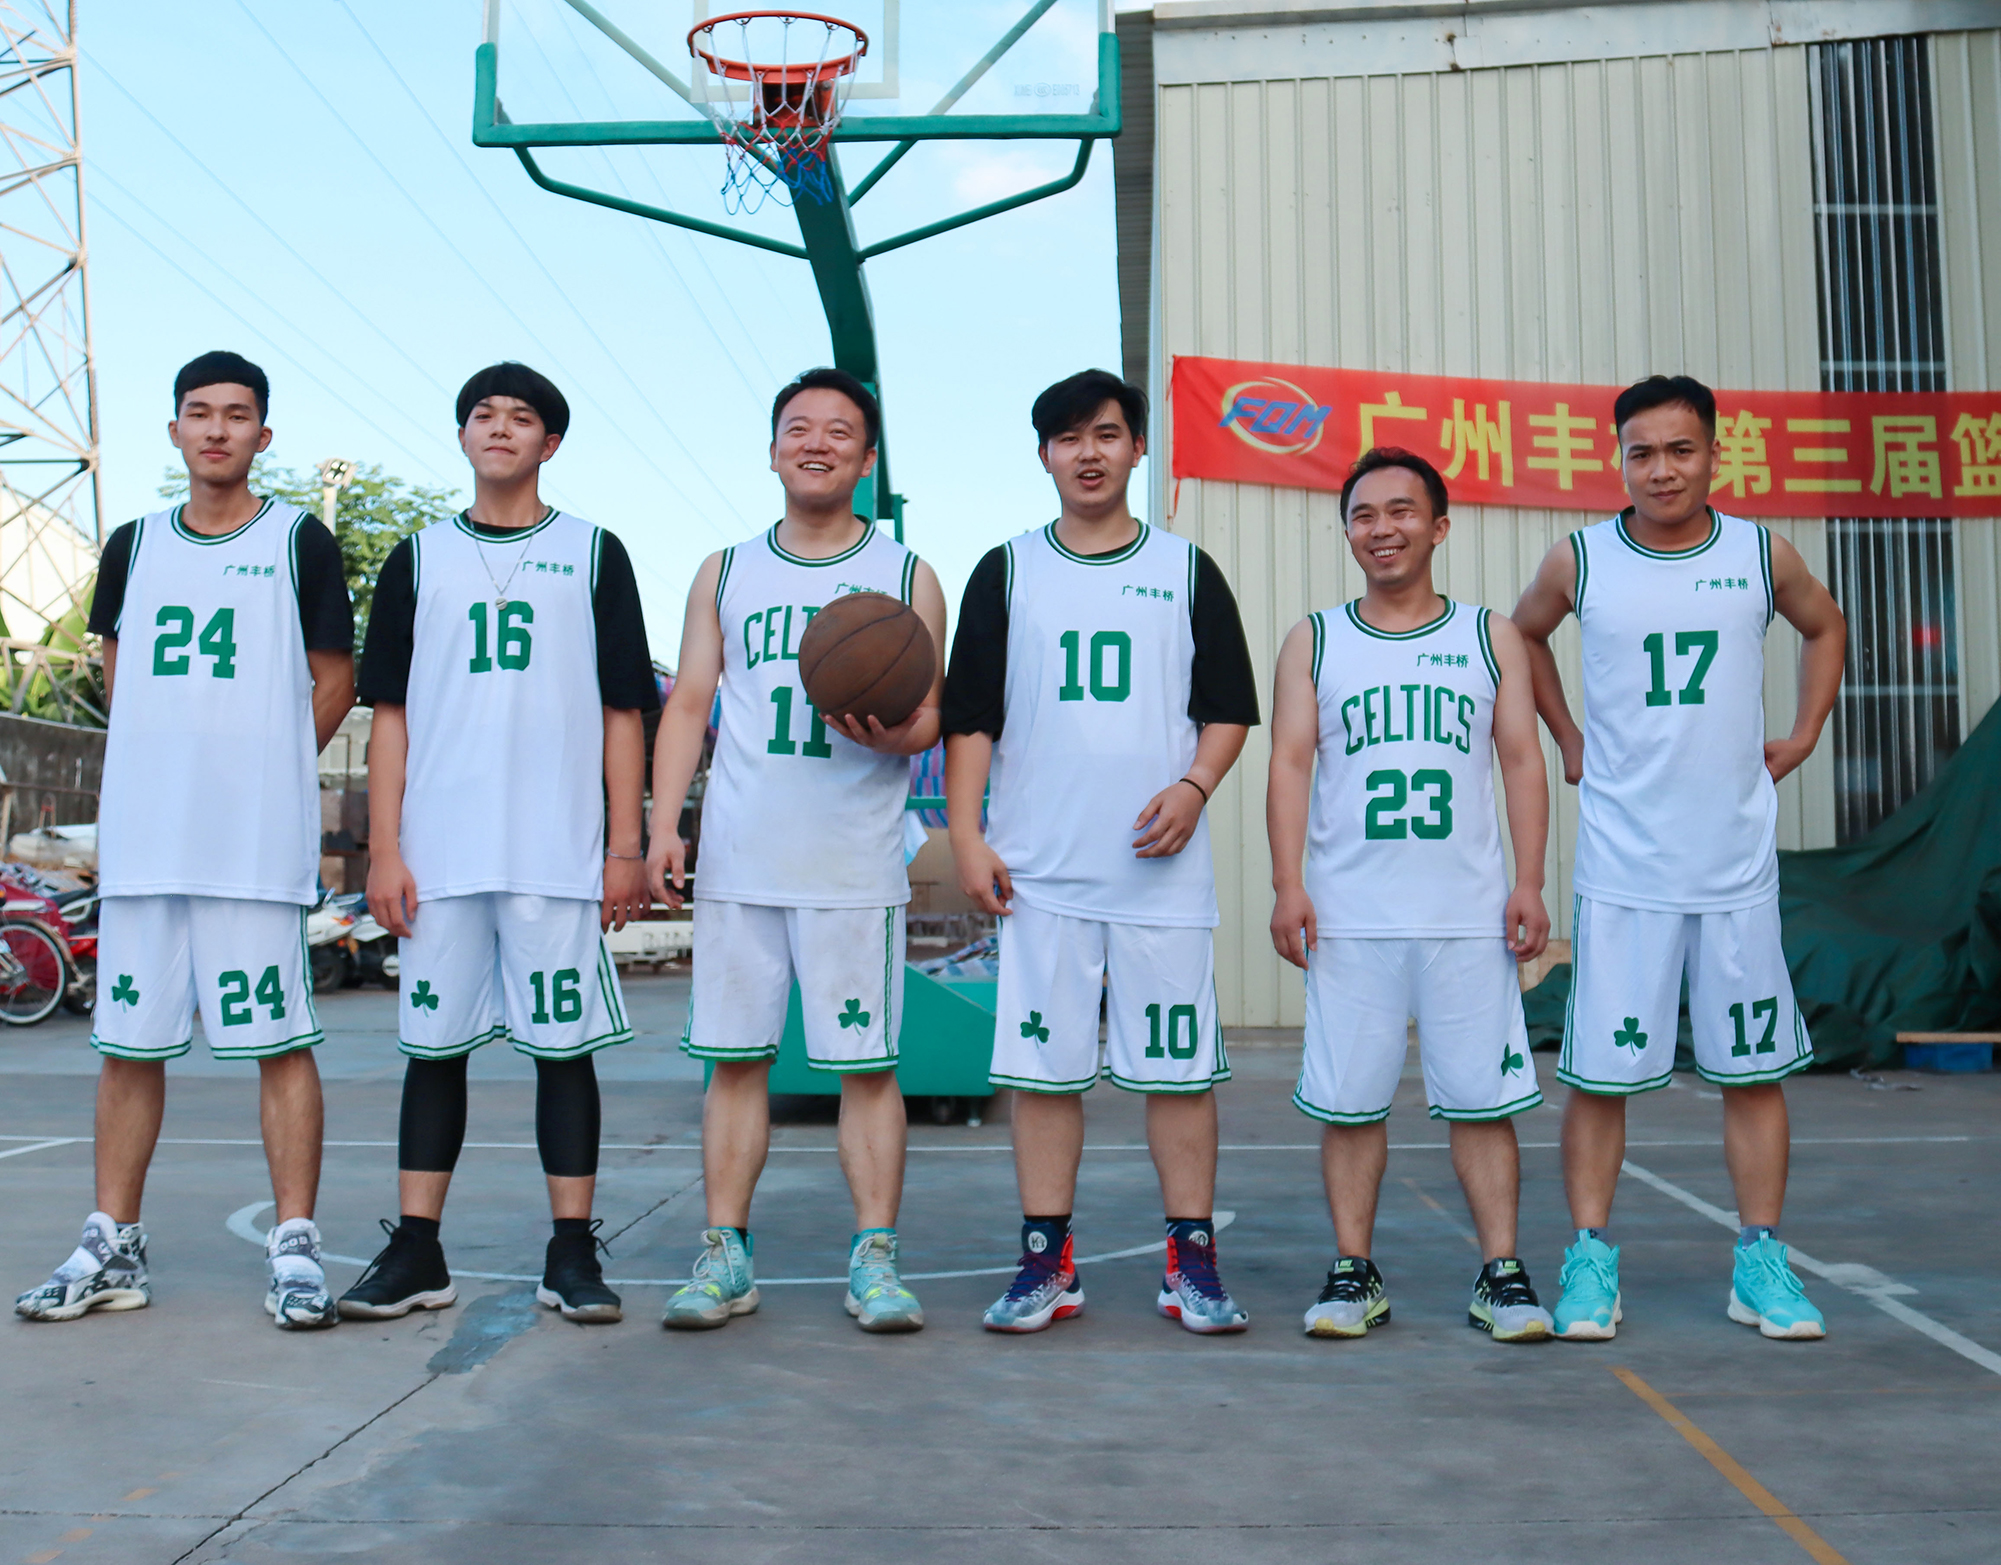 广州丰桥智能装备有限公司第三届篮球赛 ——群雄逐鹿，谁主篮坛